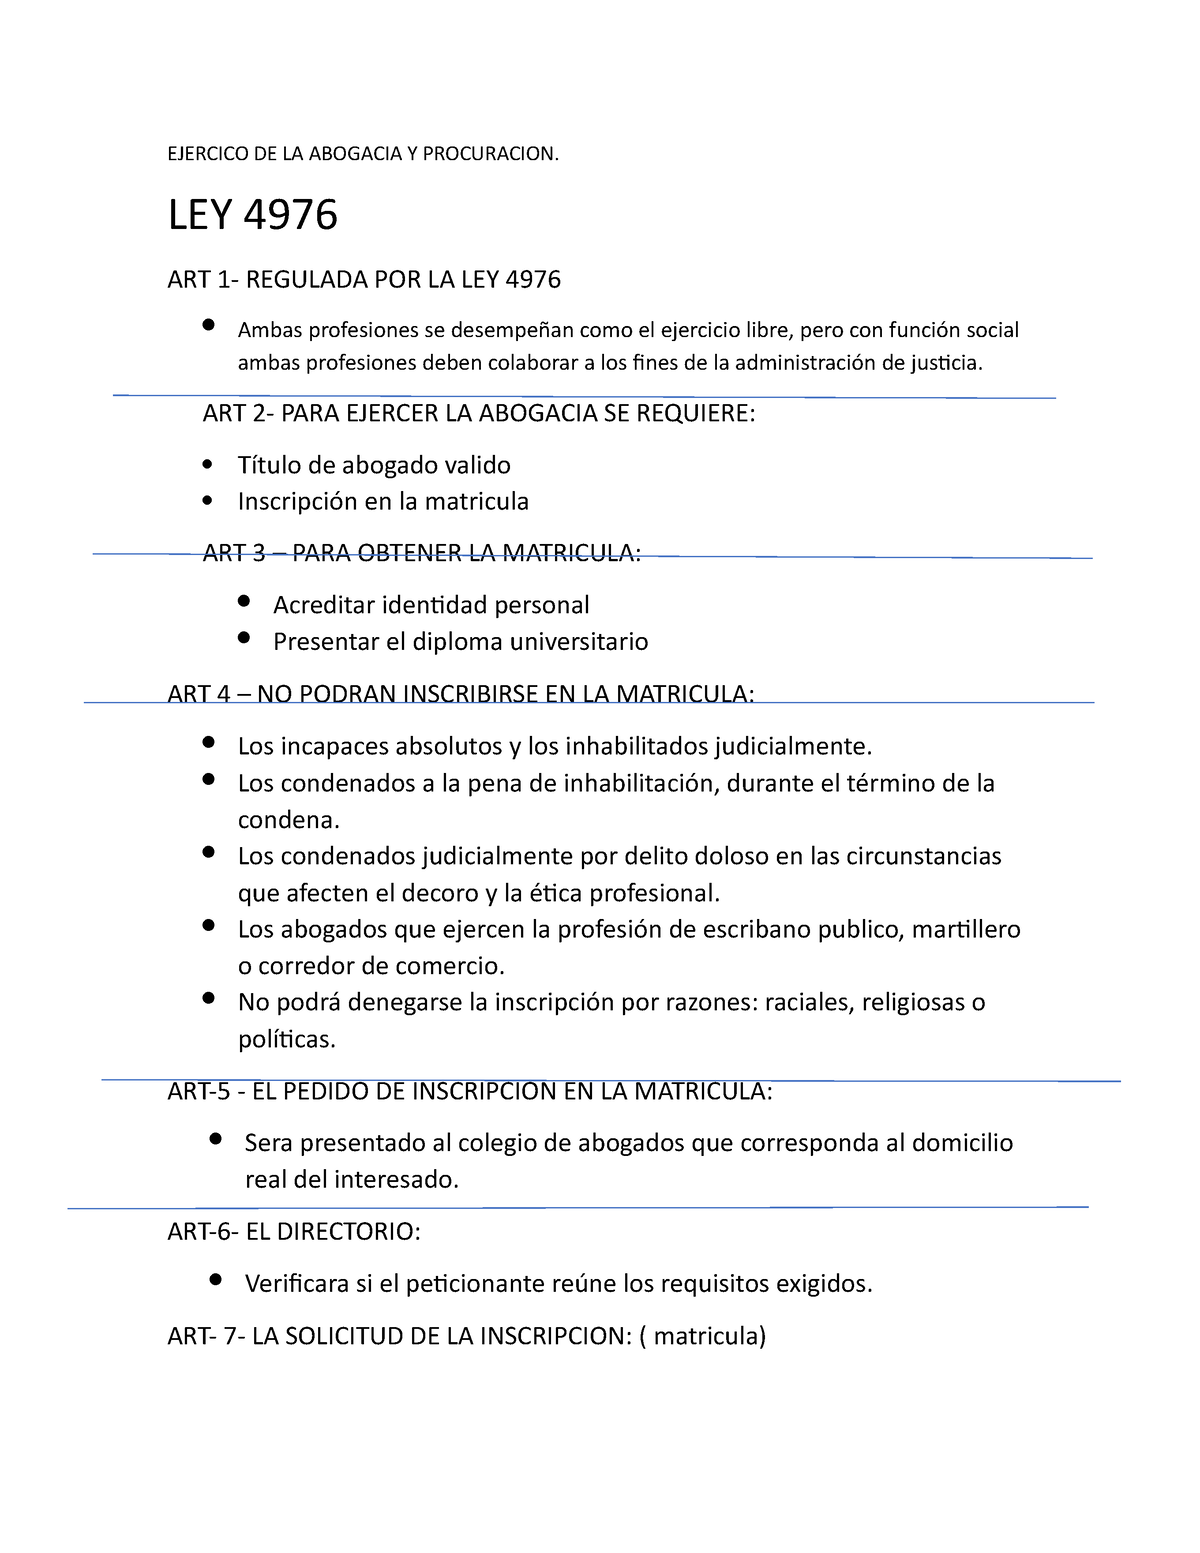 Ley 4976 Apuntes Ejercico De La Abogacia Y Procuracion Ley 4976 Art 1 Regulada Por La Ley 3911